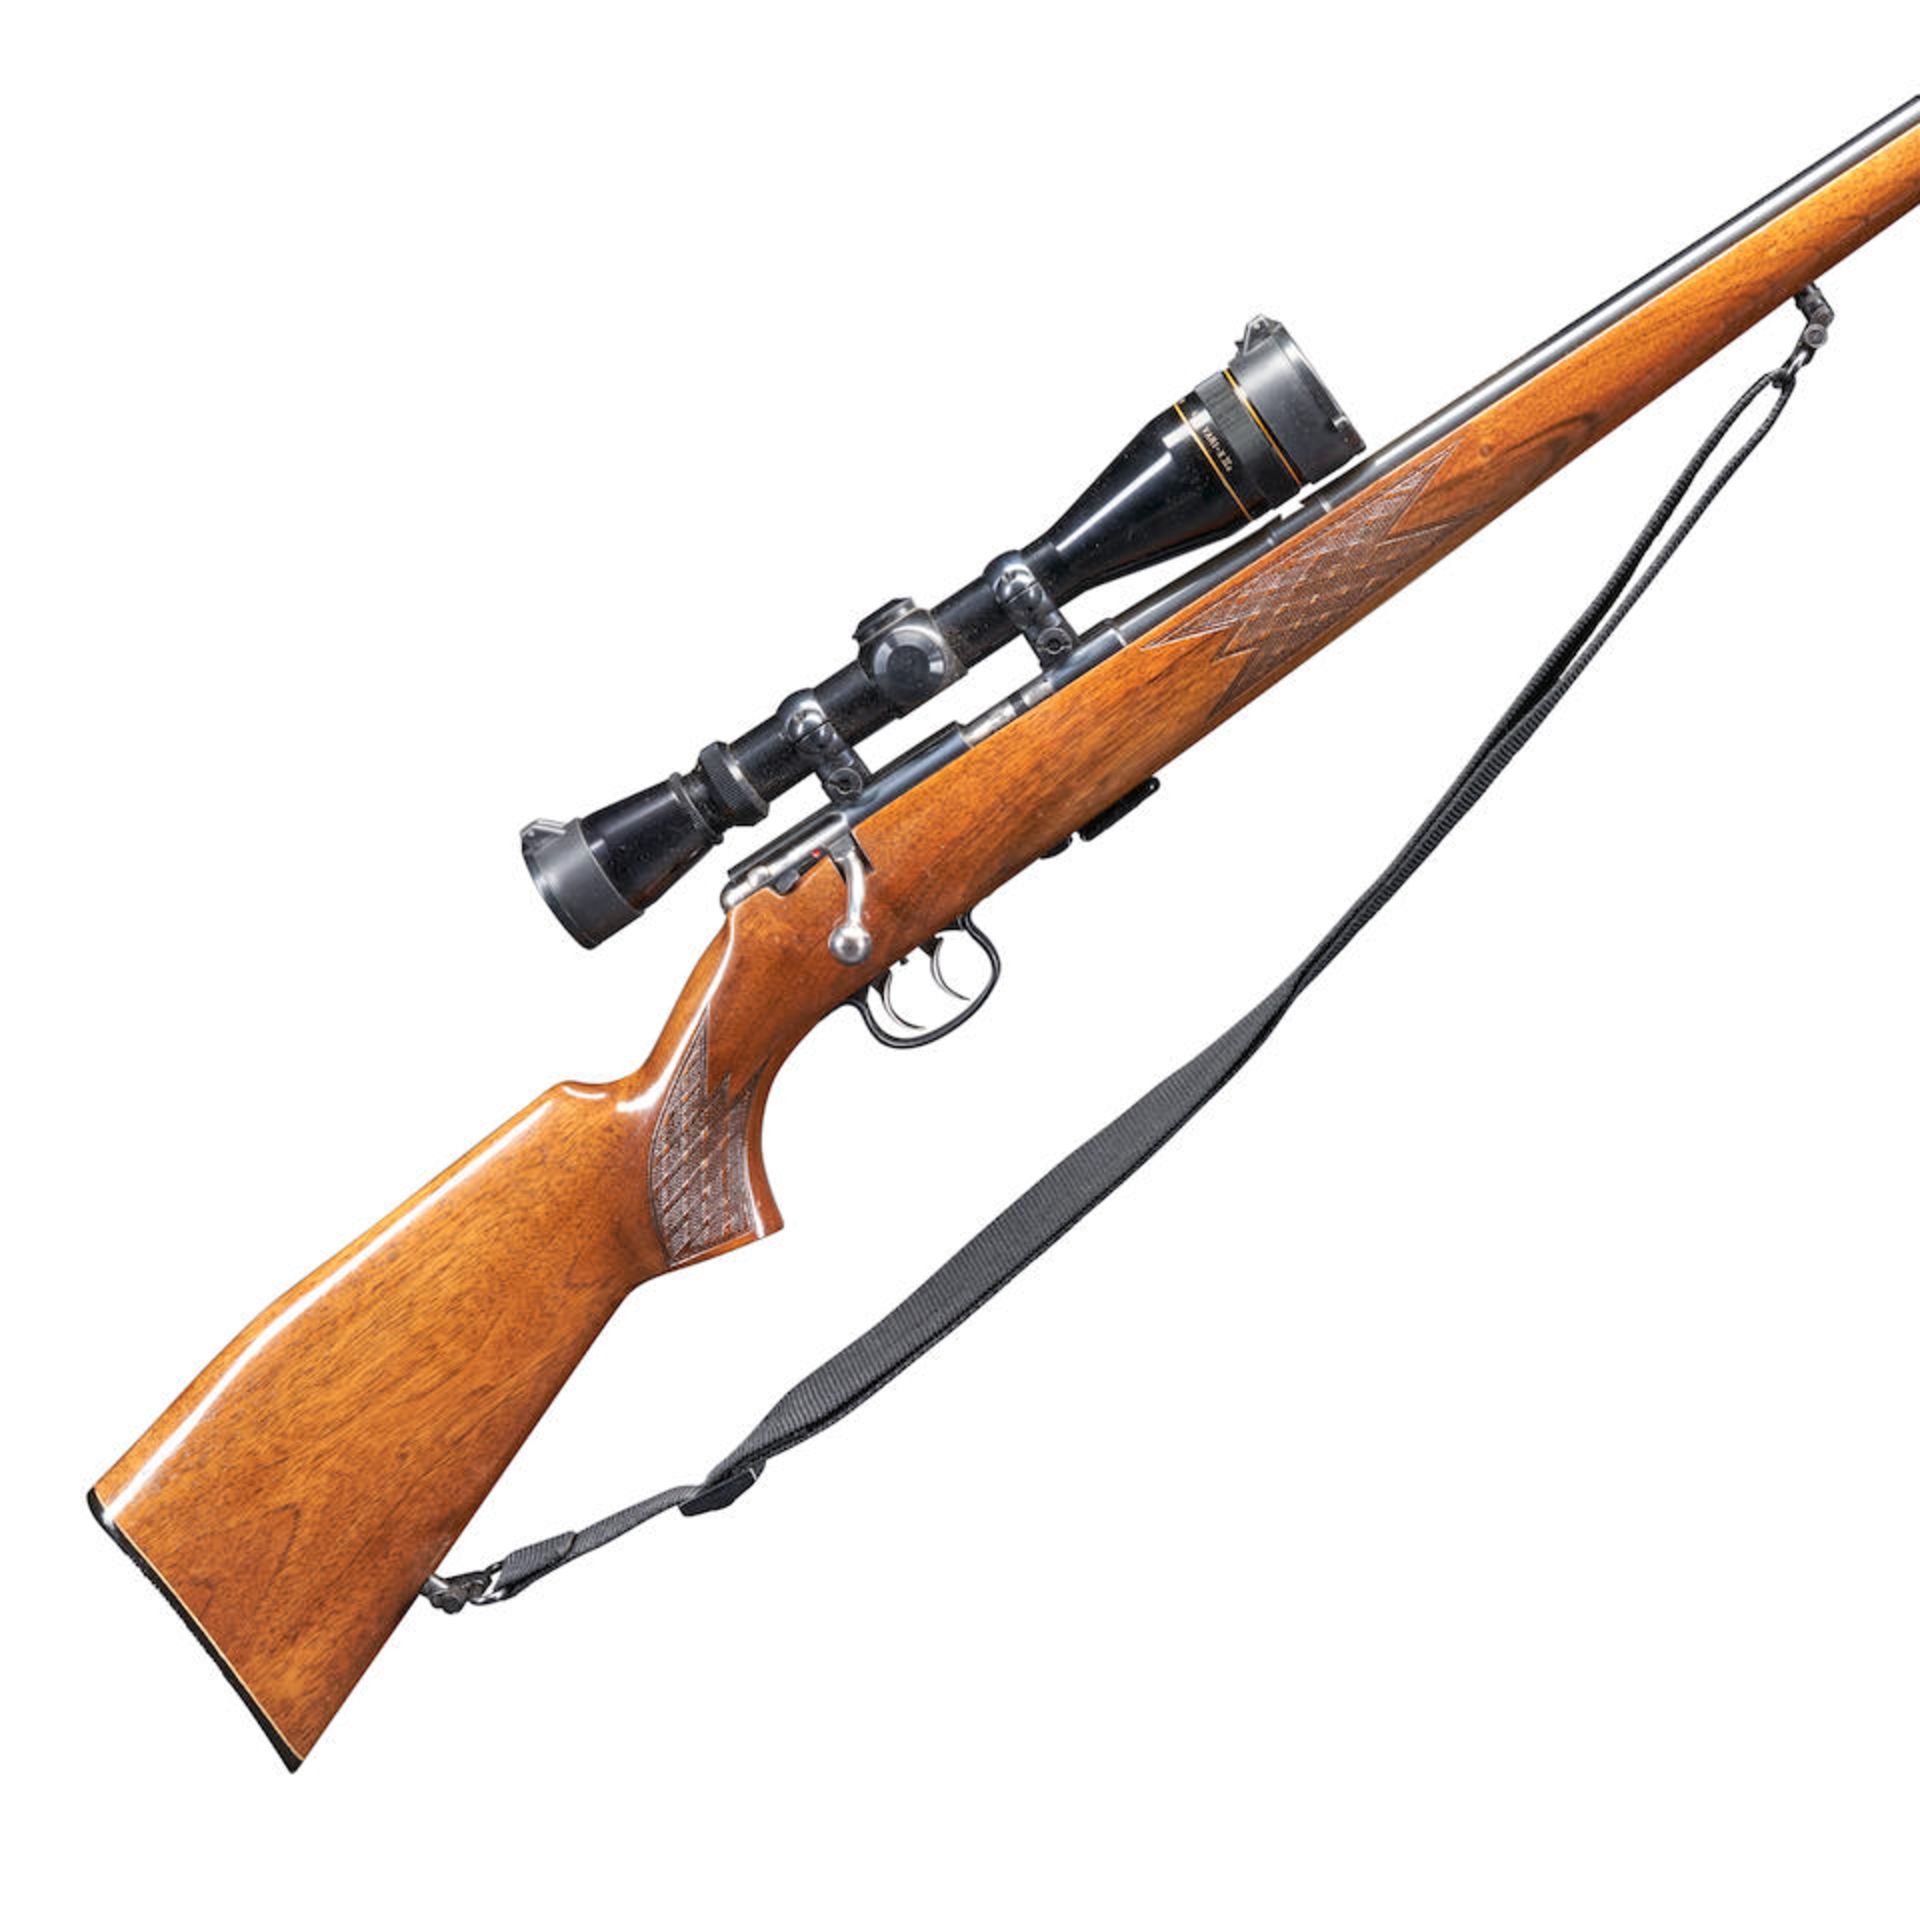 Anschutz Model 1418 Bolt Action Rifle, Curio or Relic firearm